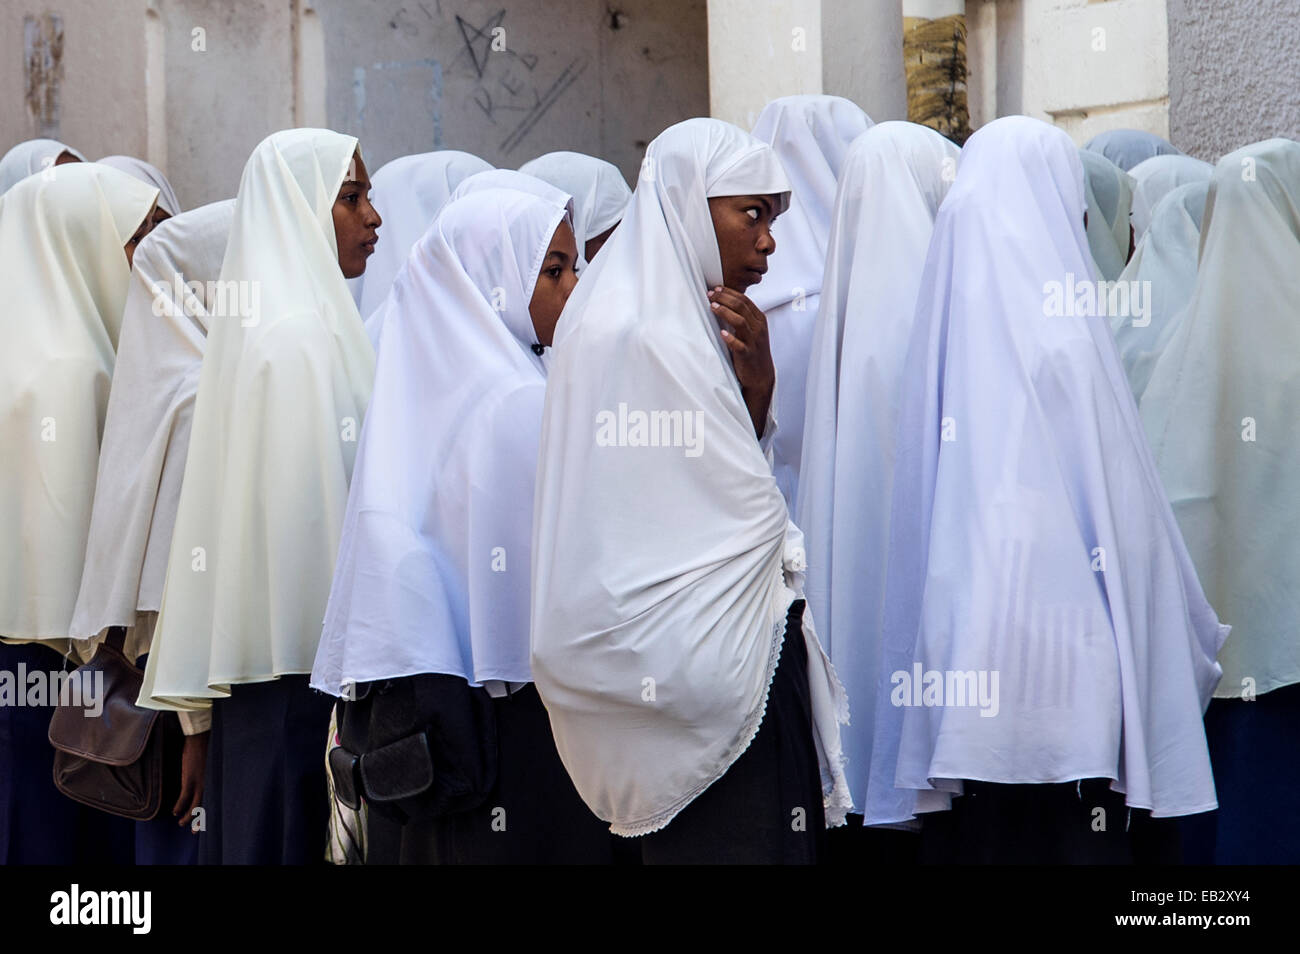 Ragazzi musulmani attendere per entrare in classe all'inizio di un altro giorno di scuola. Foto Stock